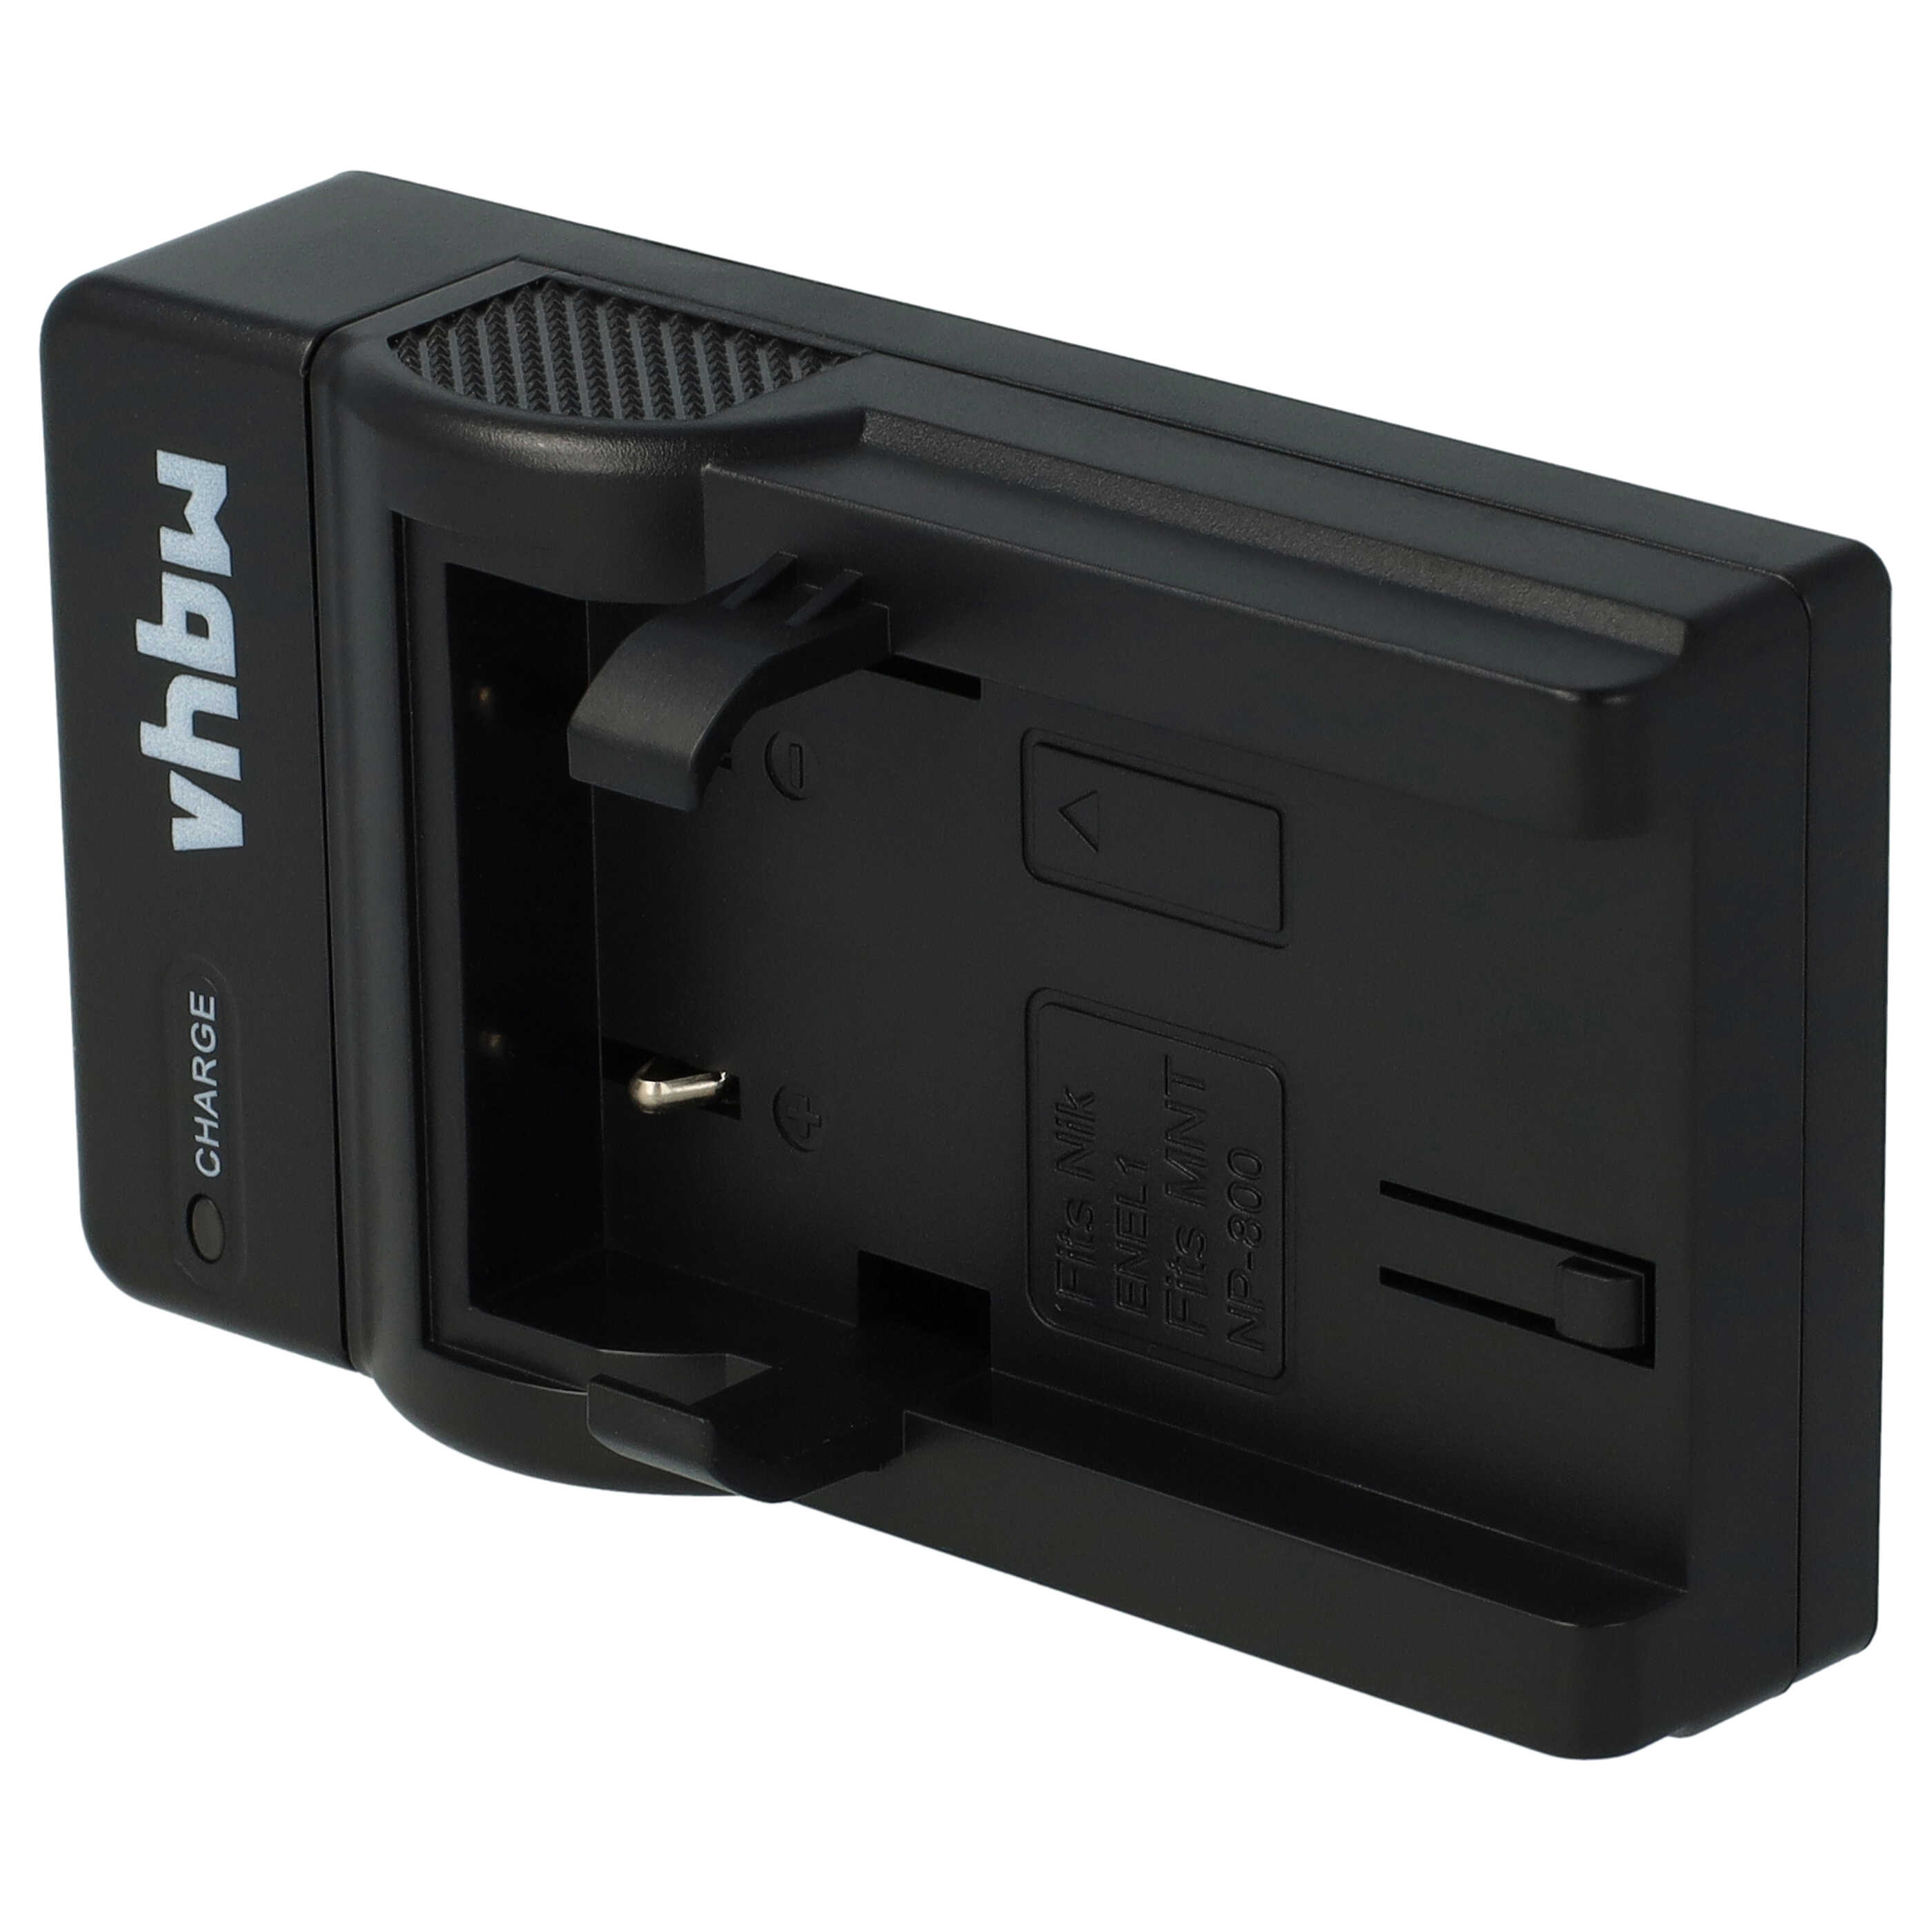 Cargador para cámara Coolpix - 0,5A 8,4V 43,5cm